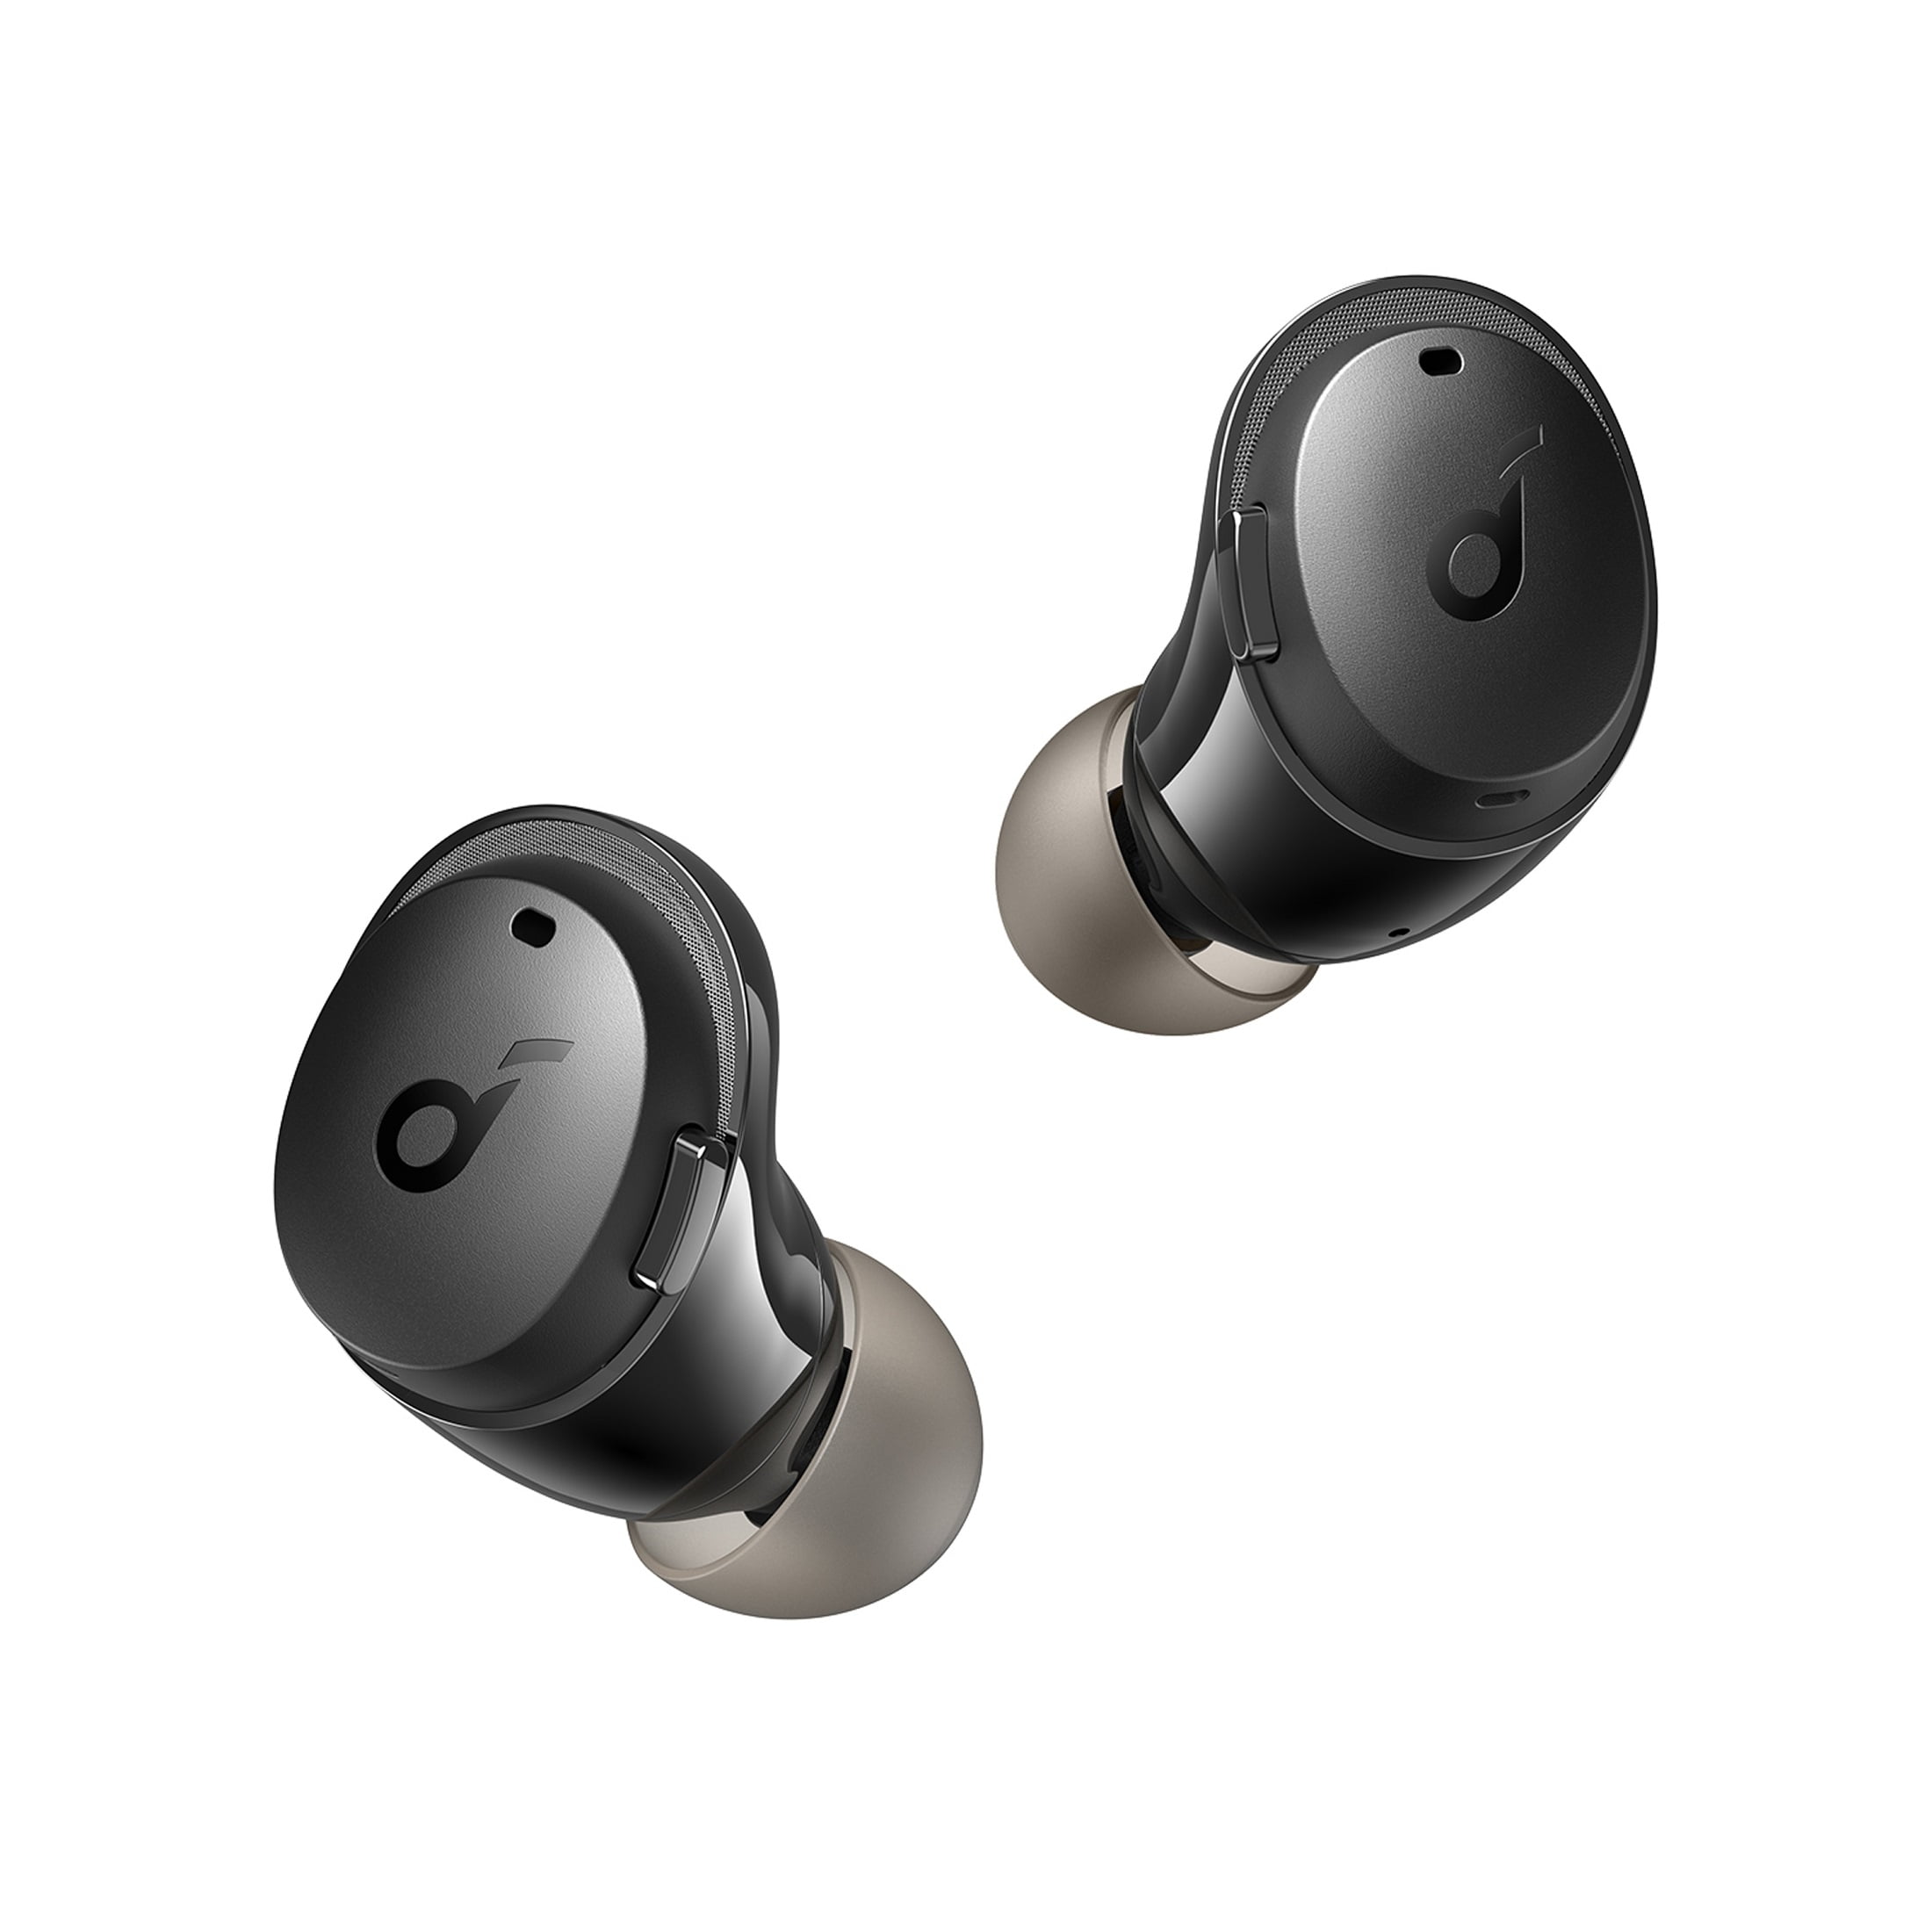 SOUNDCORE ANKER LIFE P3 Wireless In Ear Earbuds - Black £55.00